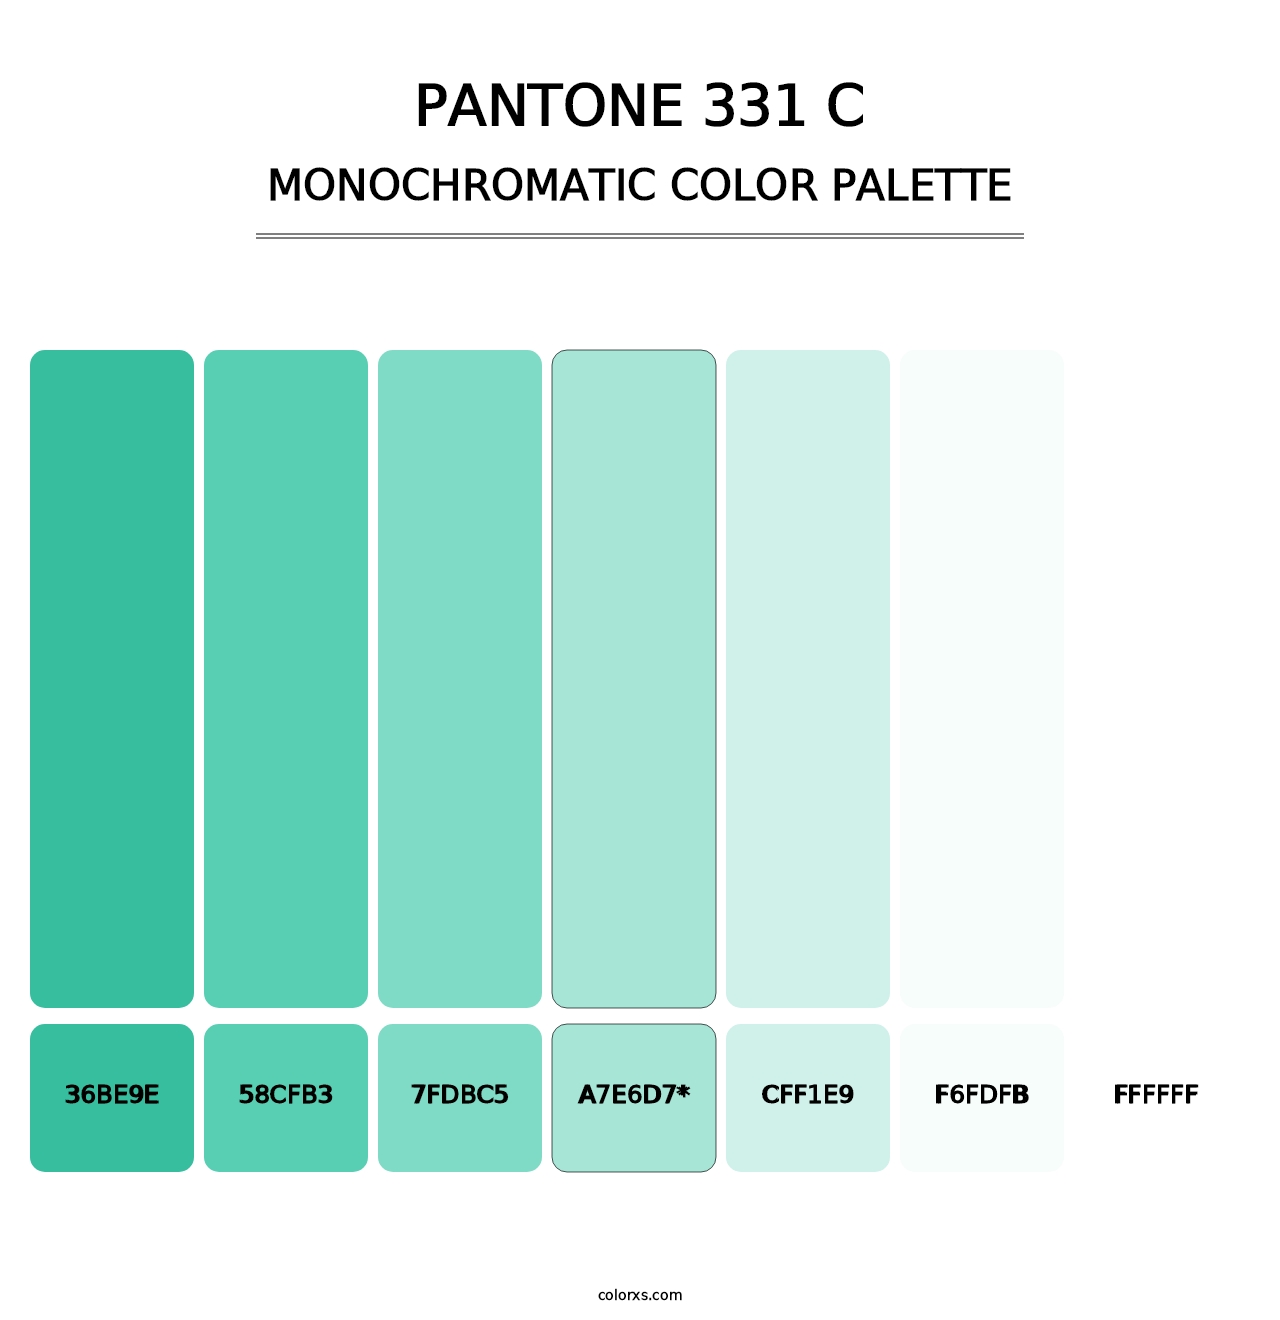 PANTONE 331 C - Monochromatic Color Palette